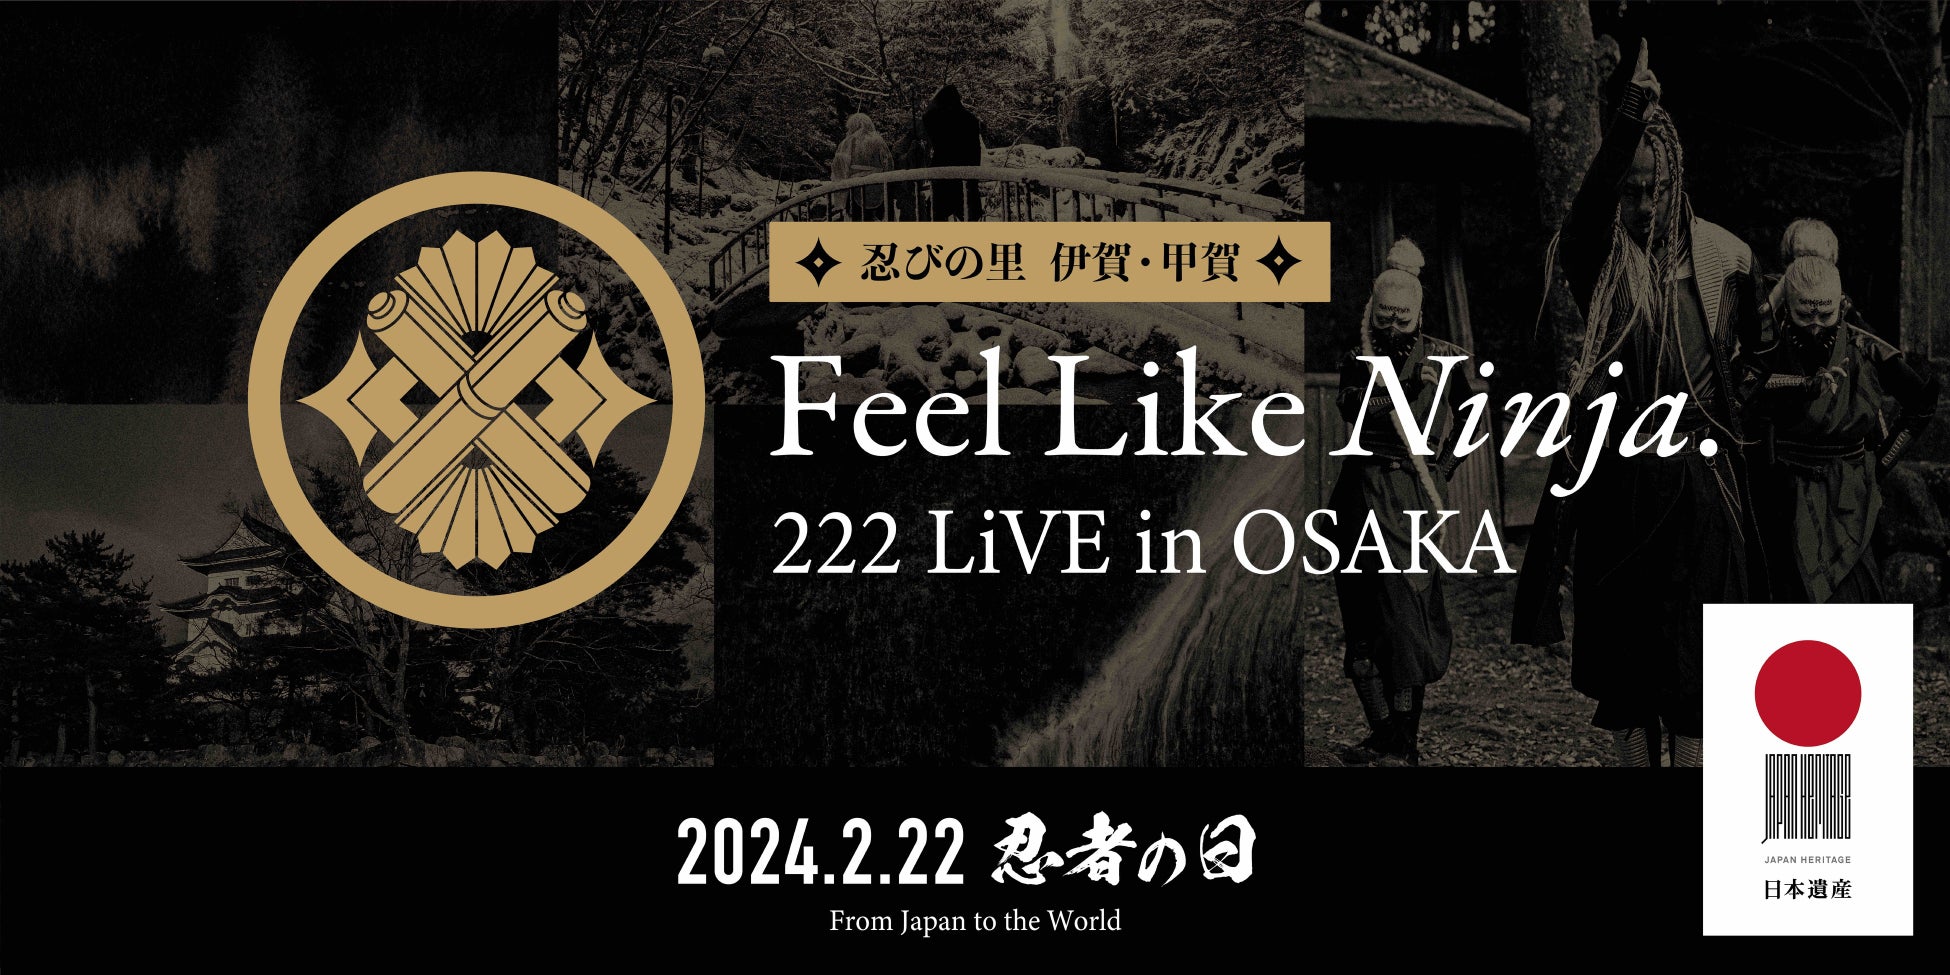 2月22日は忍者の日！「忍びの里 伊賀・甲賀 Feel Like Ninja. 222 LiVE in OSAKA」を開催！